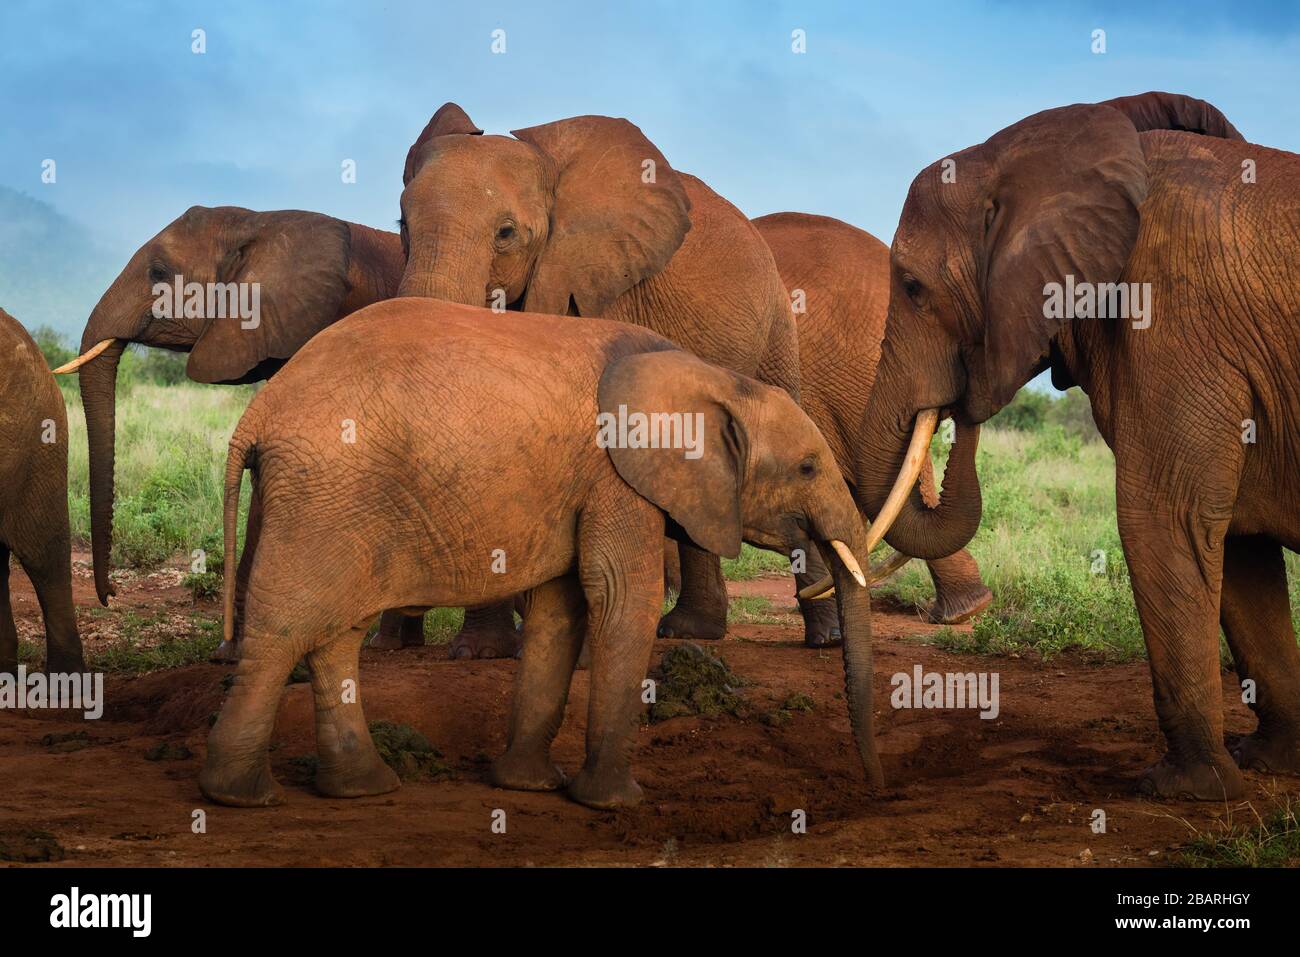 Haufen afrikanischer roter Elefanten in der Savanne, Reise Afrika Kenia Safari-Touren in Tansania, Elefantenfamilie in freier Wildbahn in Uganda Tsavo East, Ambosel Stockfoto